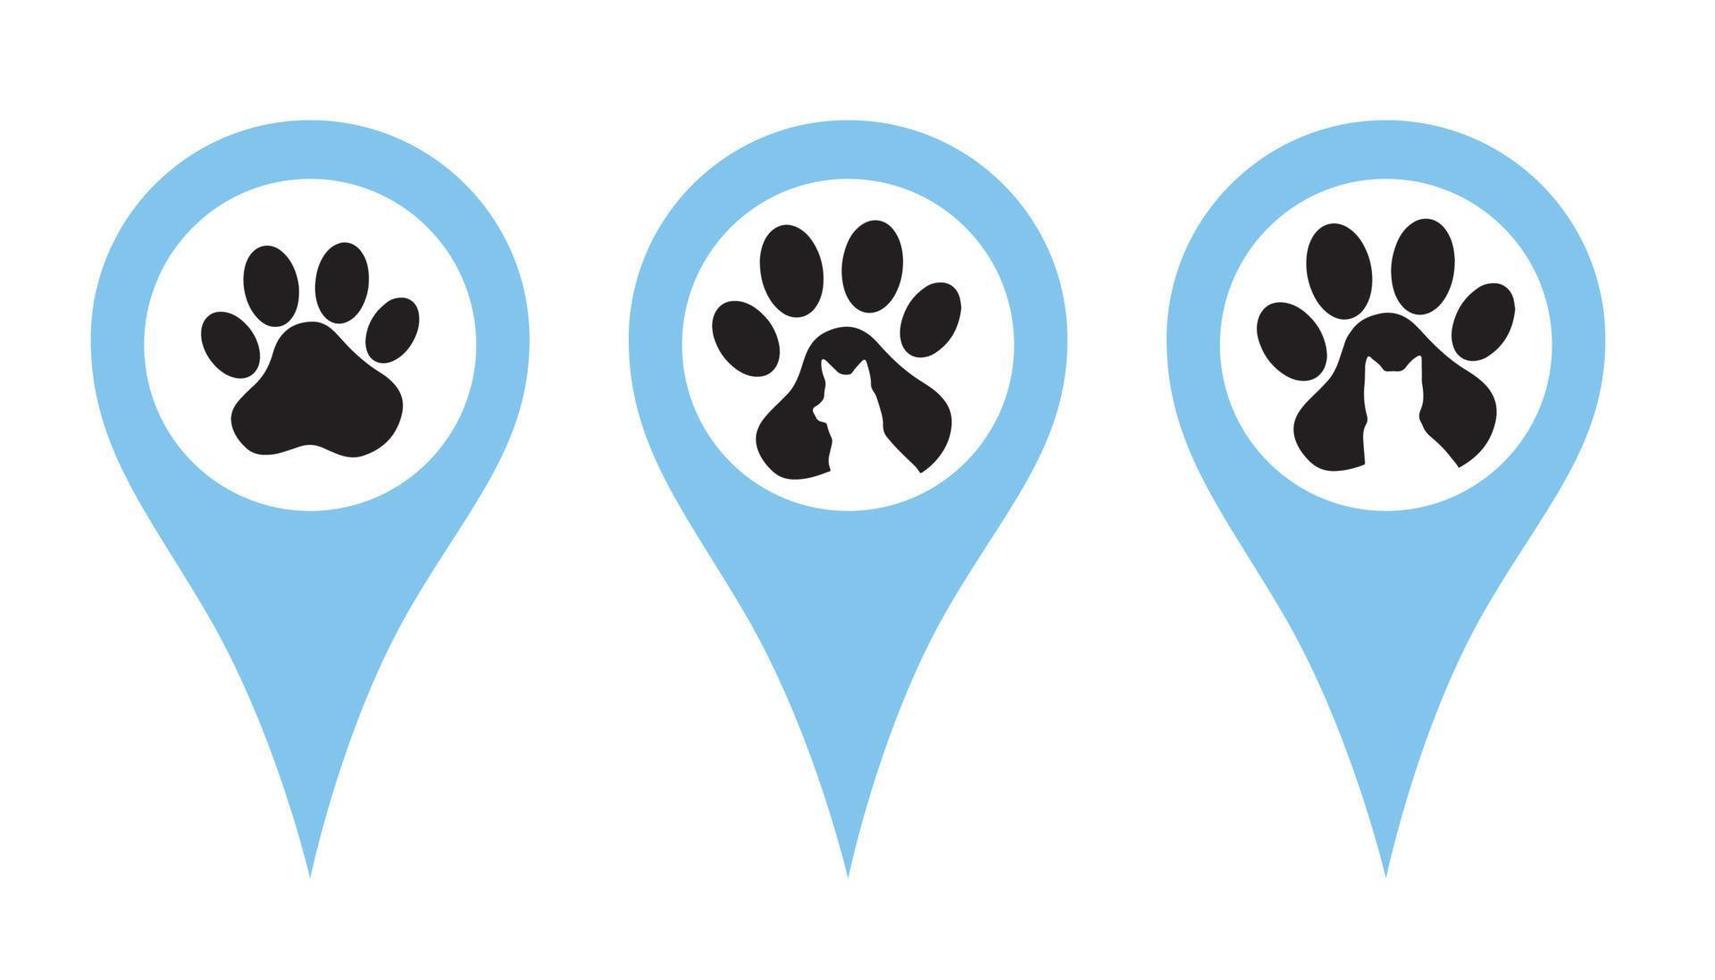 plats stift uppsättning. stift indikerar de plats av en veterinär klinik, sällskapsdjur Lagra, djur- vård Centrum. märken med Tass grafik, en silhuett av en hund och en katt. vektor illustration i en platt stil.